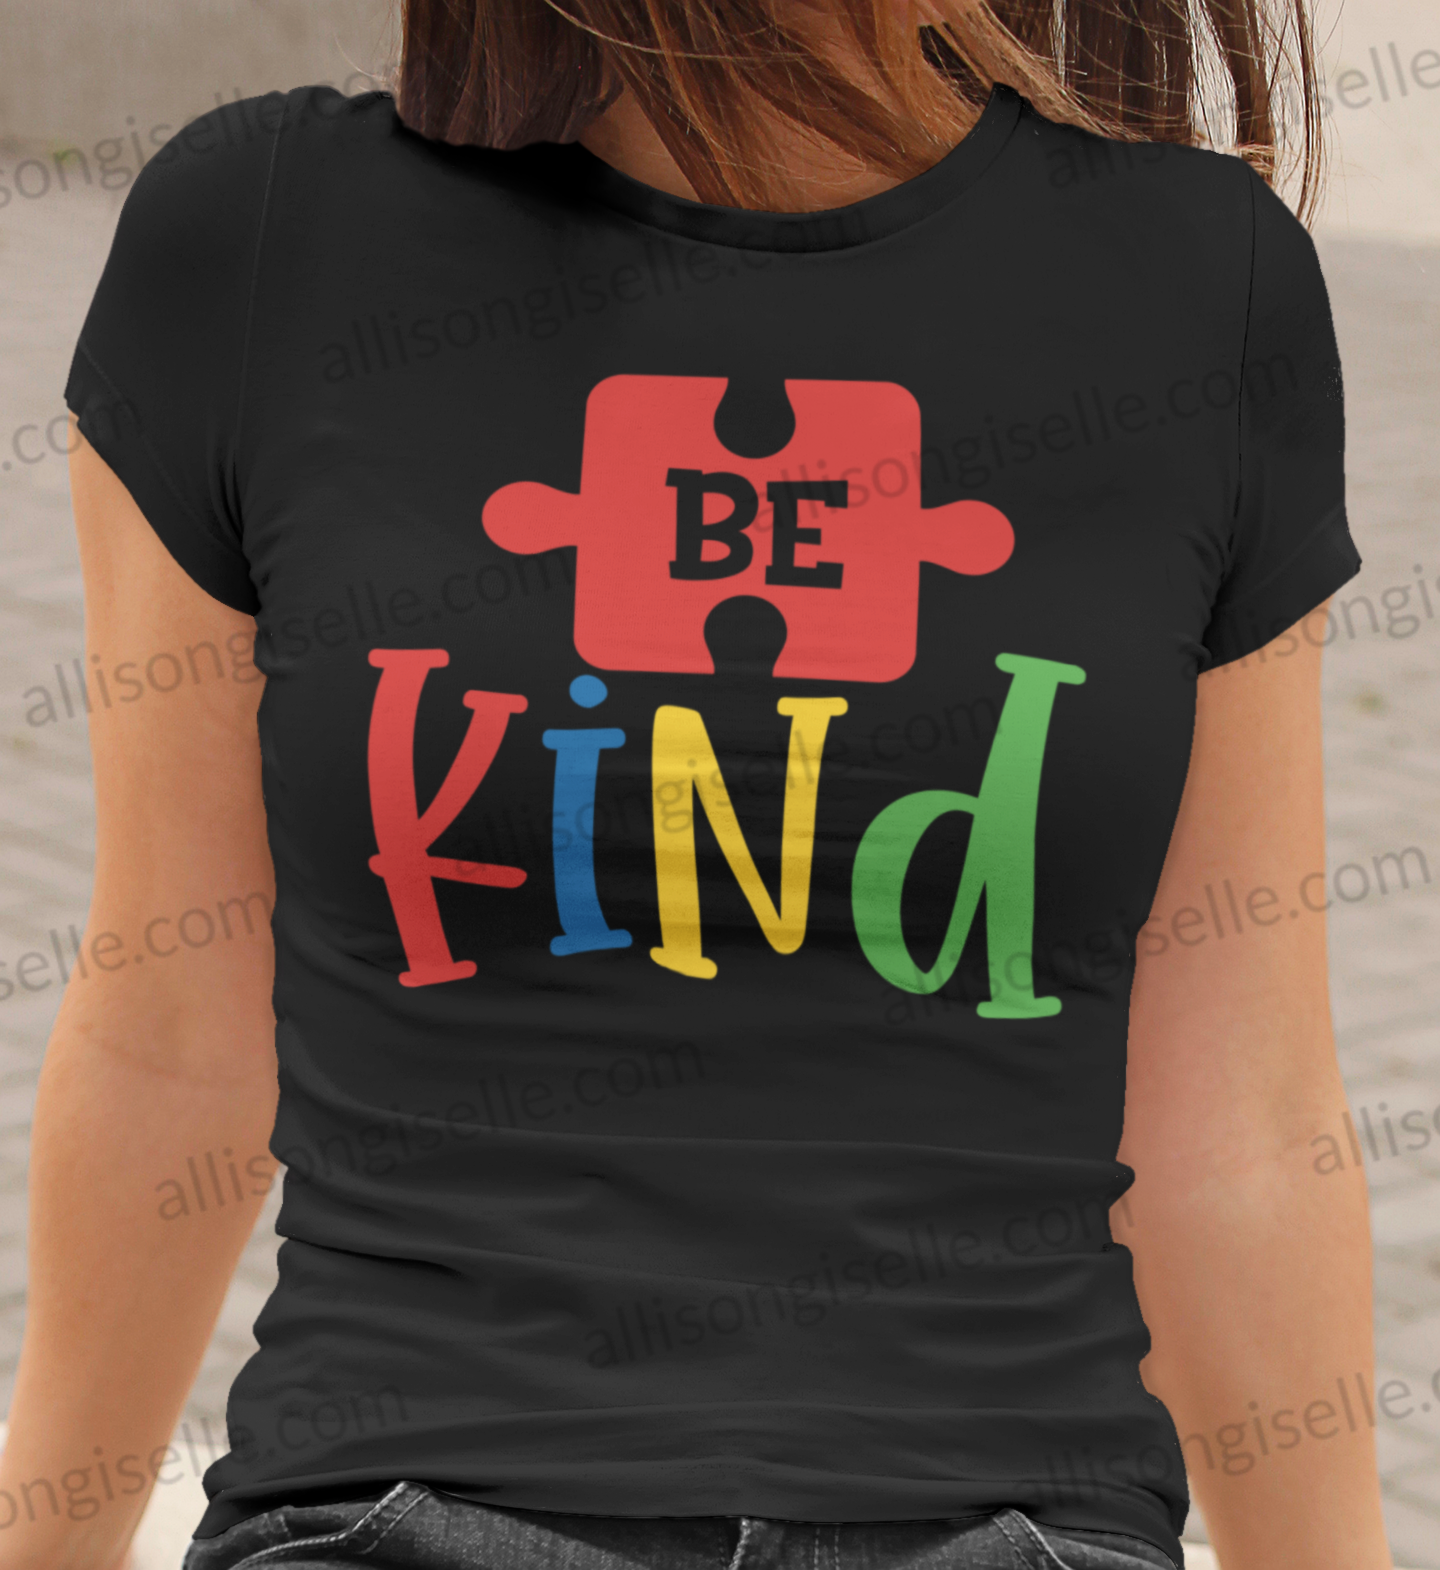 Be Kind Autism Shirt, Adult Autism Awareness shirts, Autism Shirt Adult, Adult Autism Shirt, Autism Awareness Shirt Adult